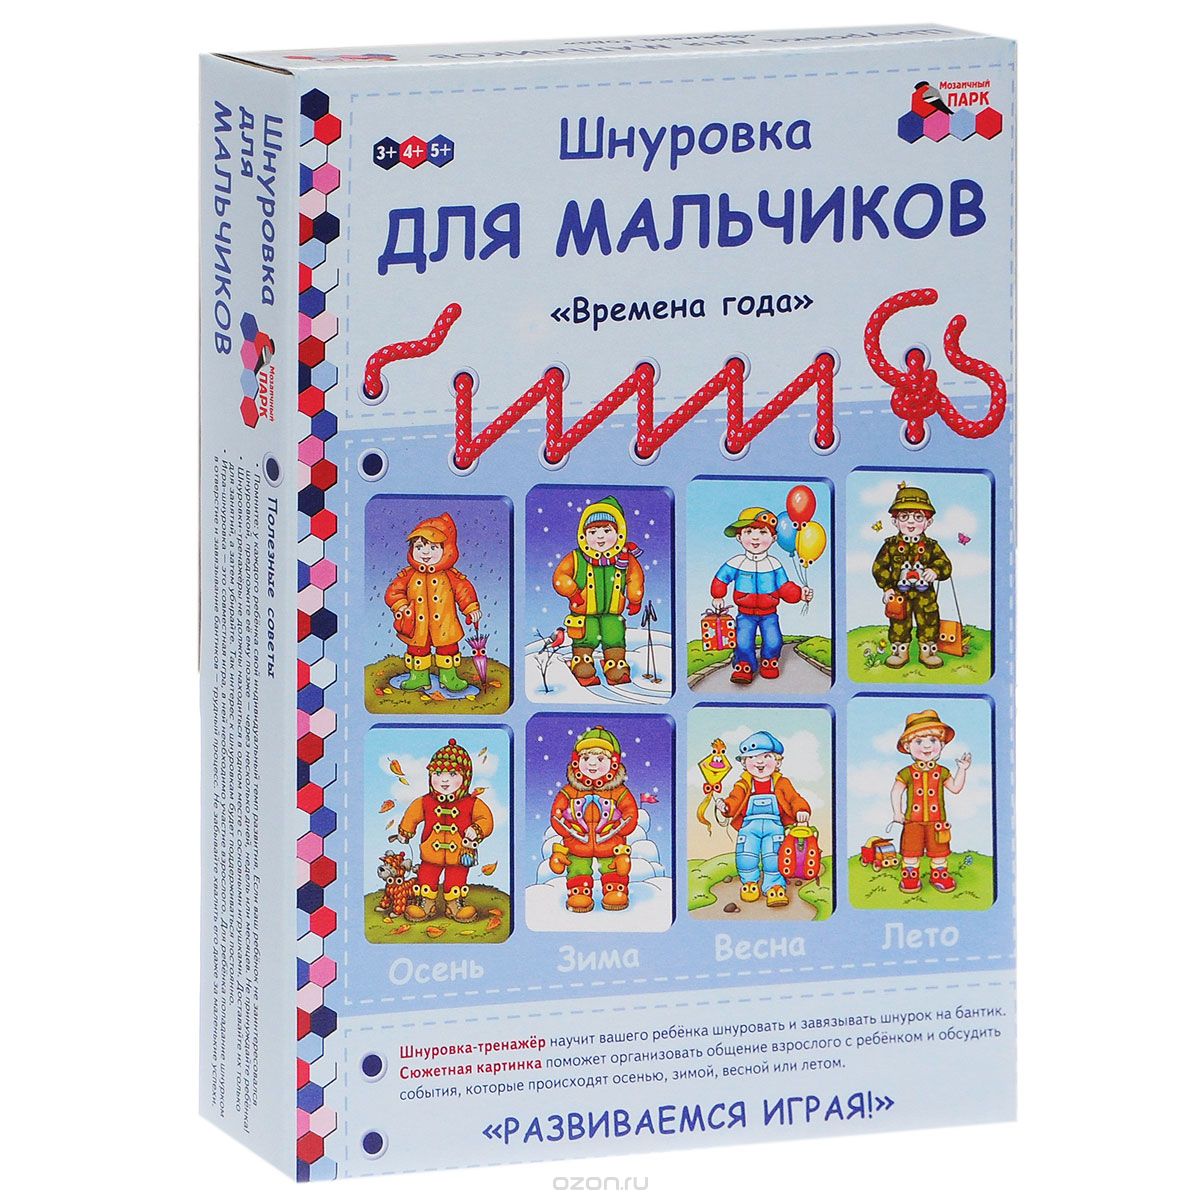 Шнуровка для мальчиков "Времена года" (набор из 4 карточек и 24 шнурков), Е. А. Каралашвили, Л. И. Павлова